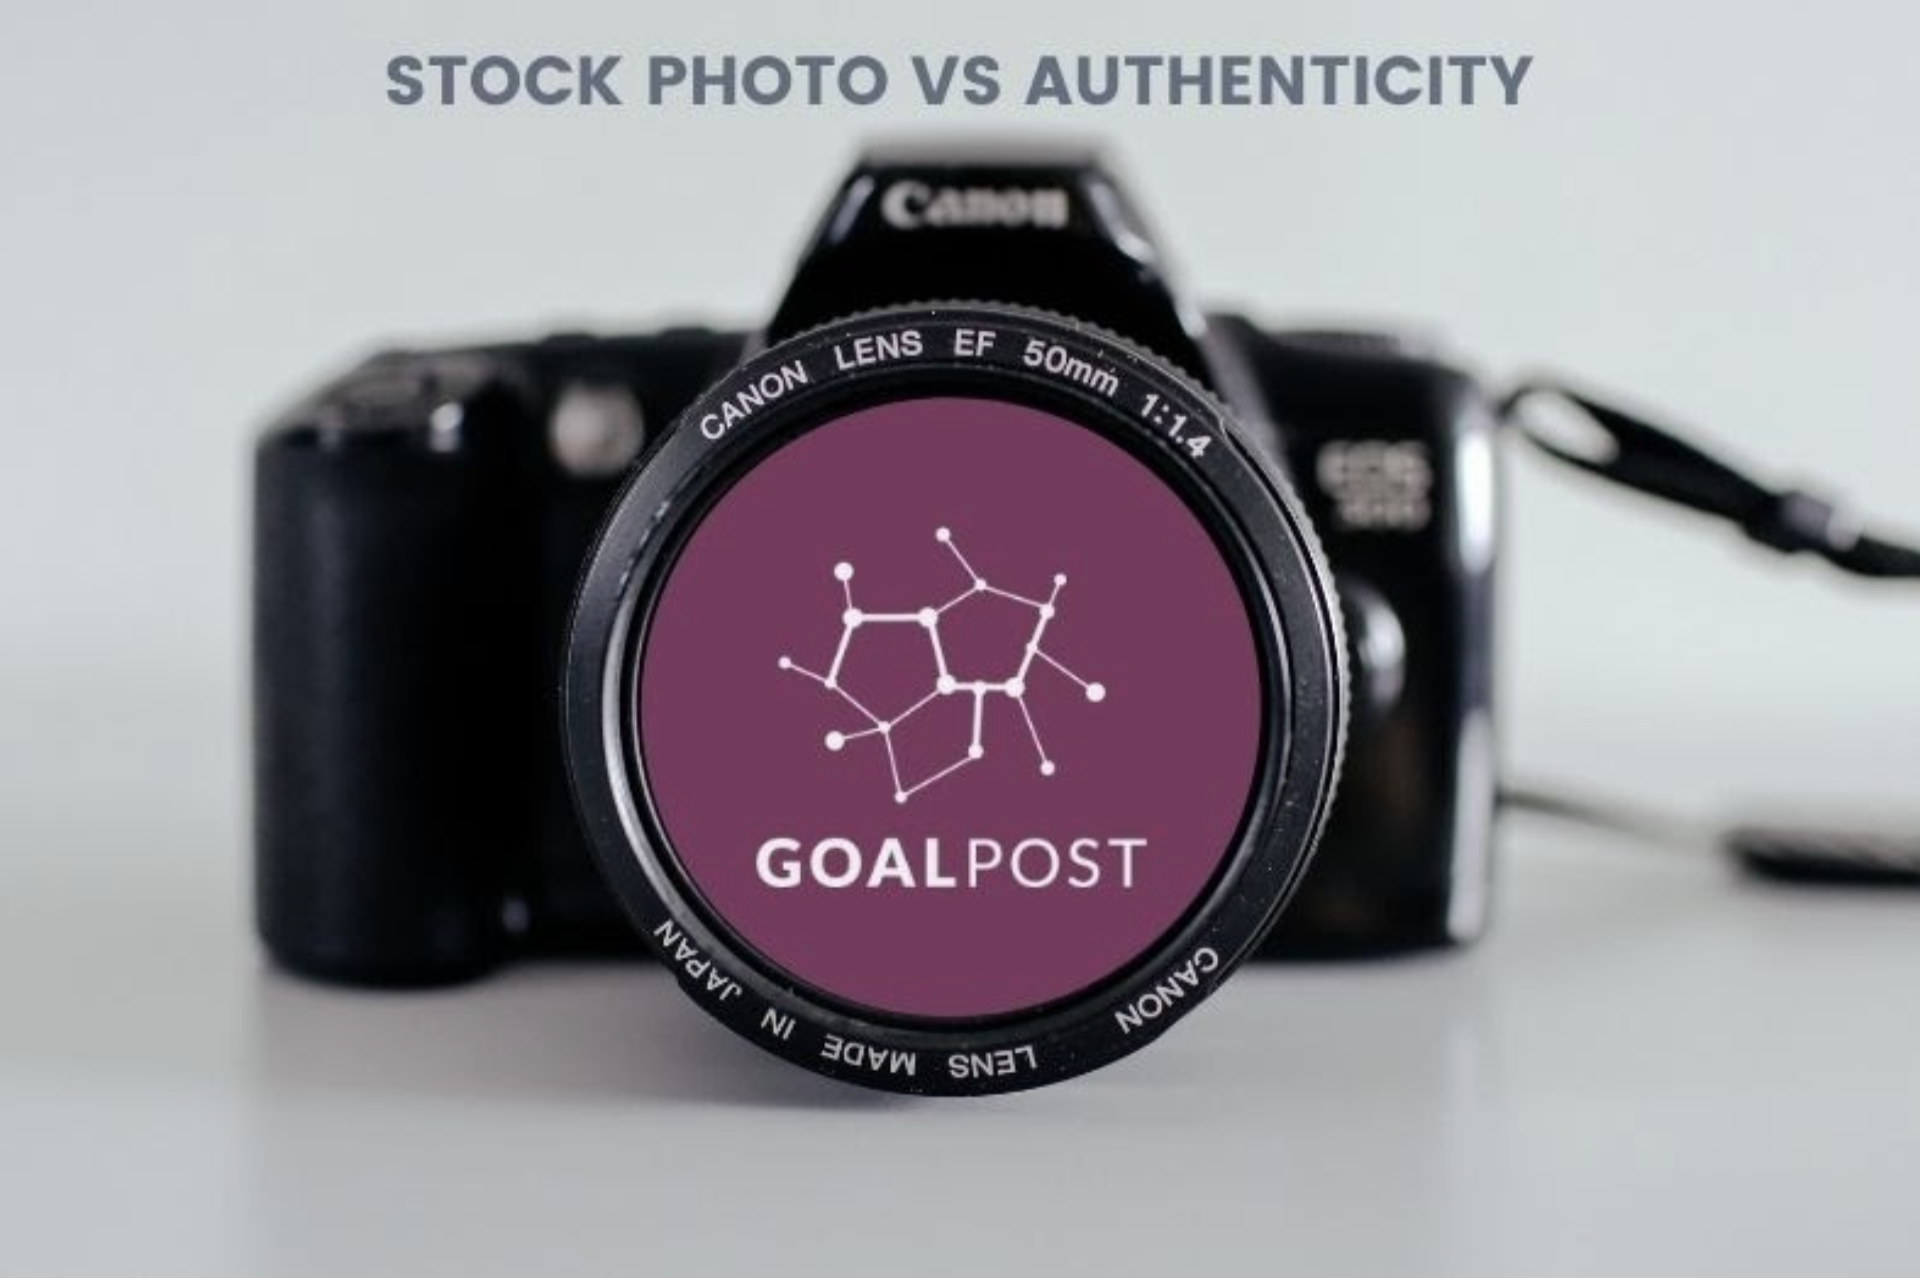 Stock Photo vs. Authenticity